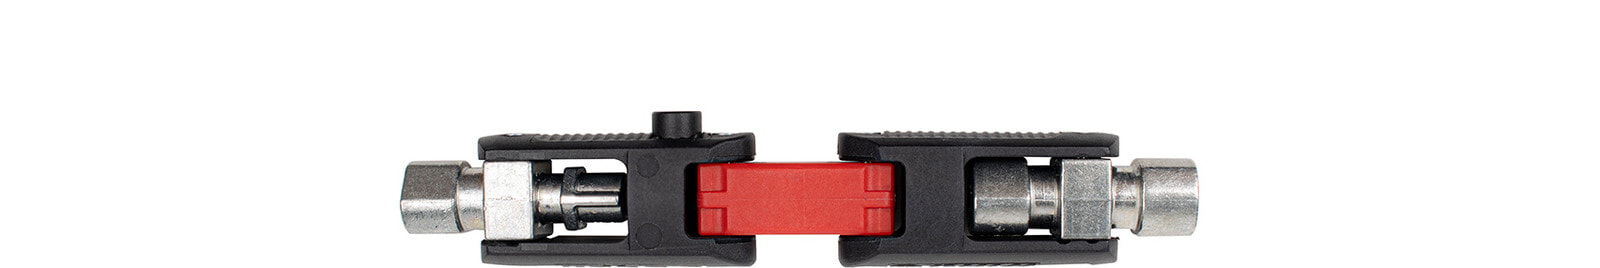 Универсальный ключ Wiha с двойным соединением. Материал: Стекловолокно, Пластик, Цинк. Цвет товара: Черный, Красный. Вес: 105 г